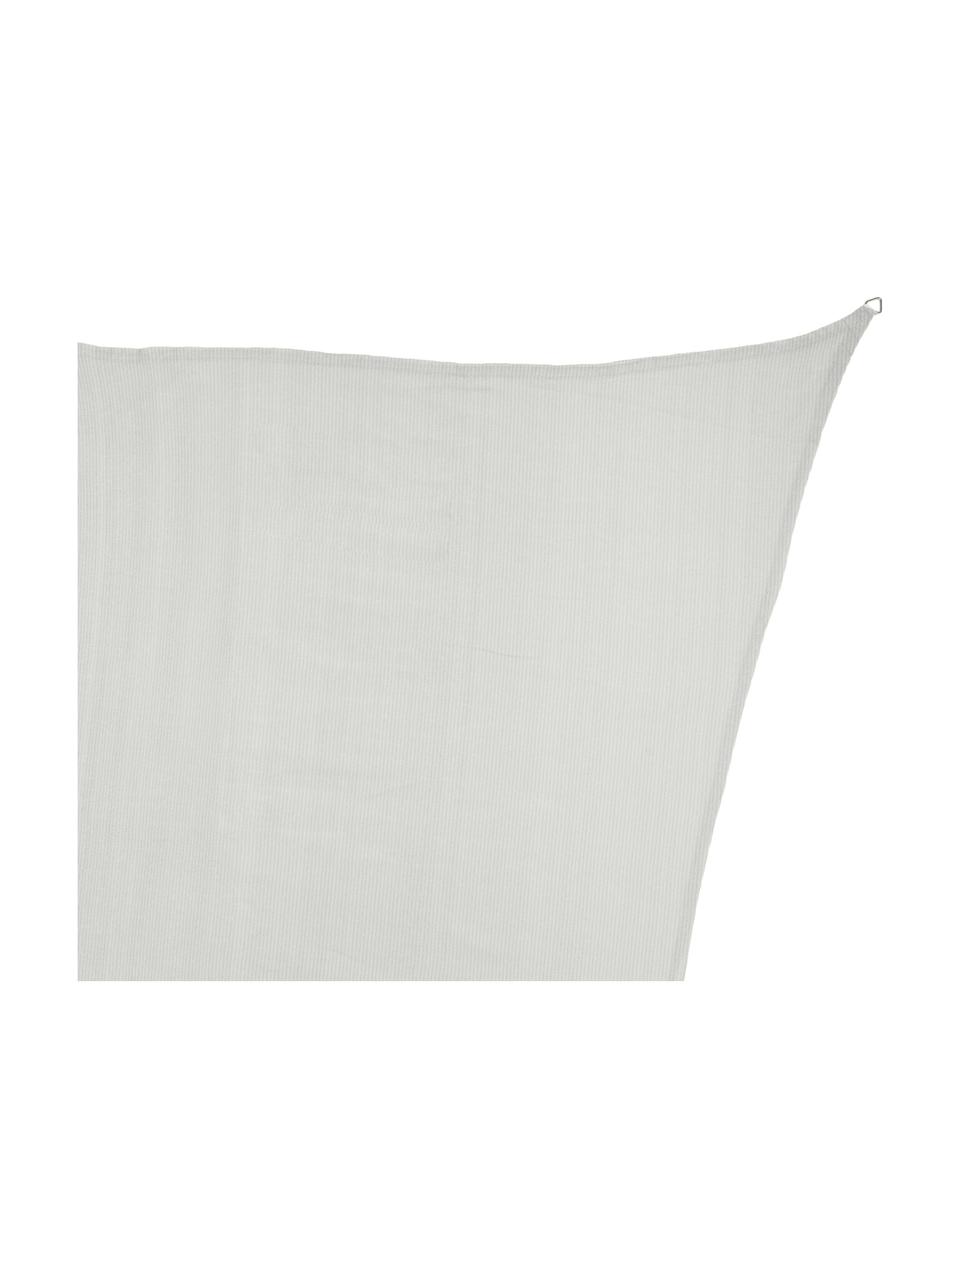 Sonnensegel Hope, Haken: Edelstahl, Weiß, 350 x 500 cm